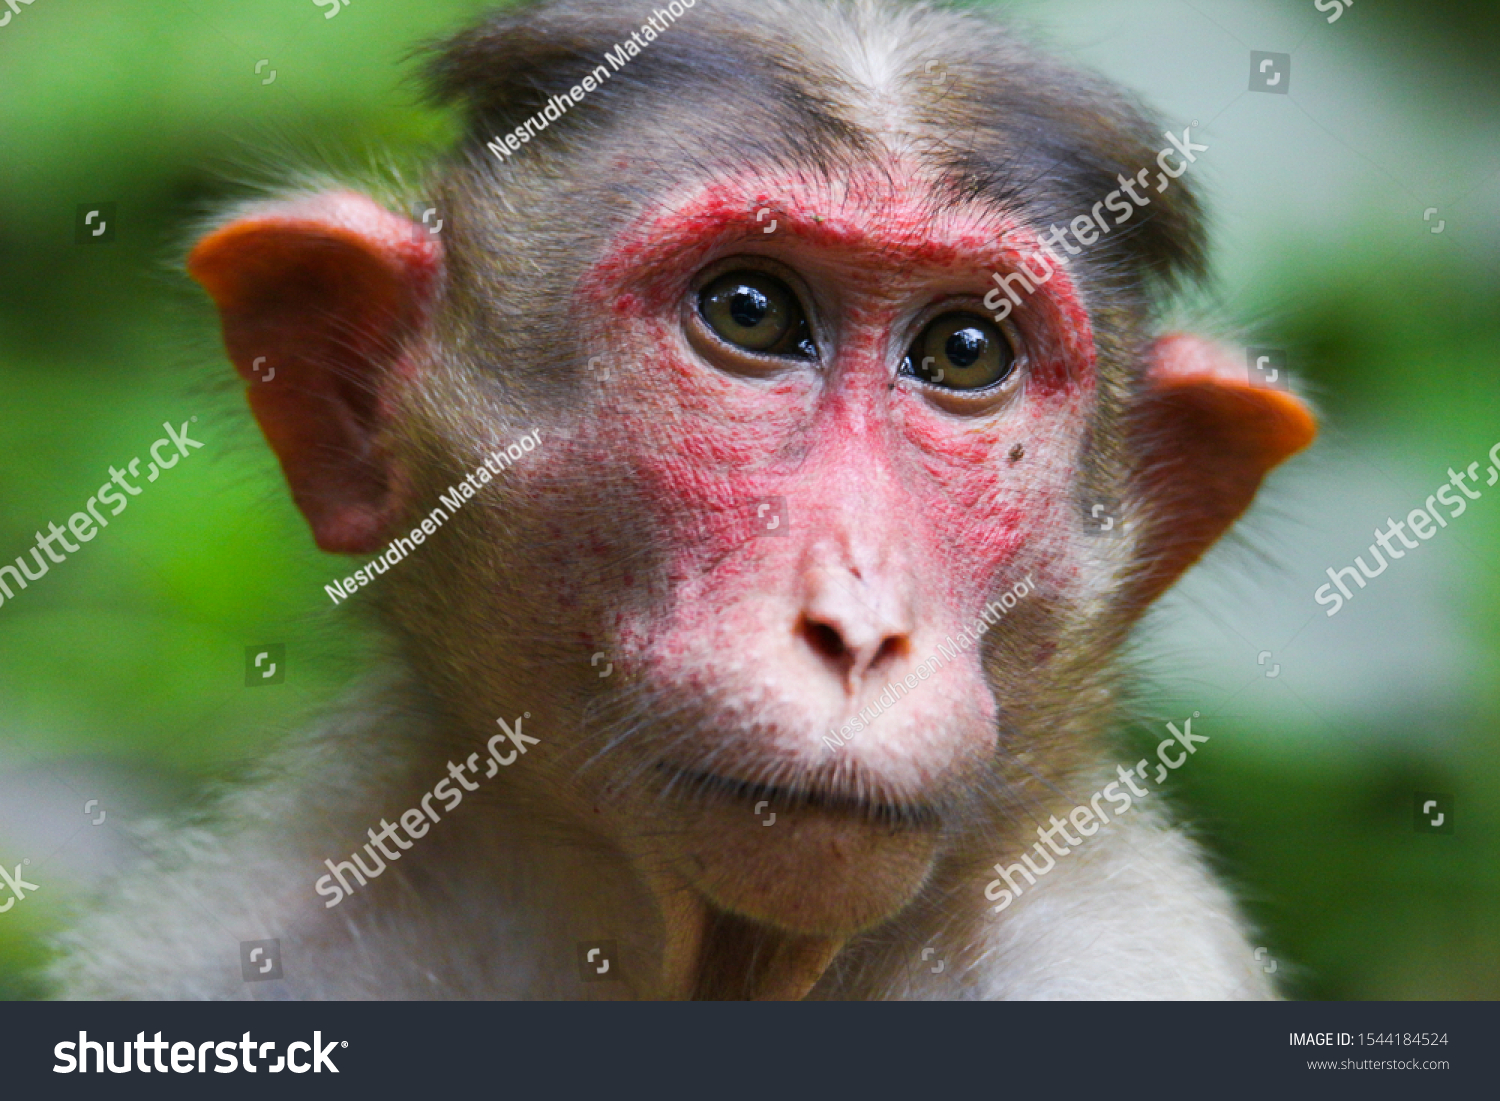 Cute monkey portrait. Monkey mother love #1544184524